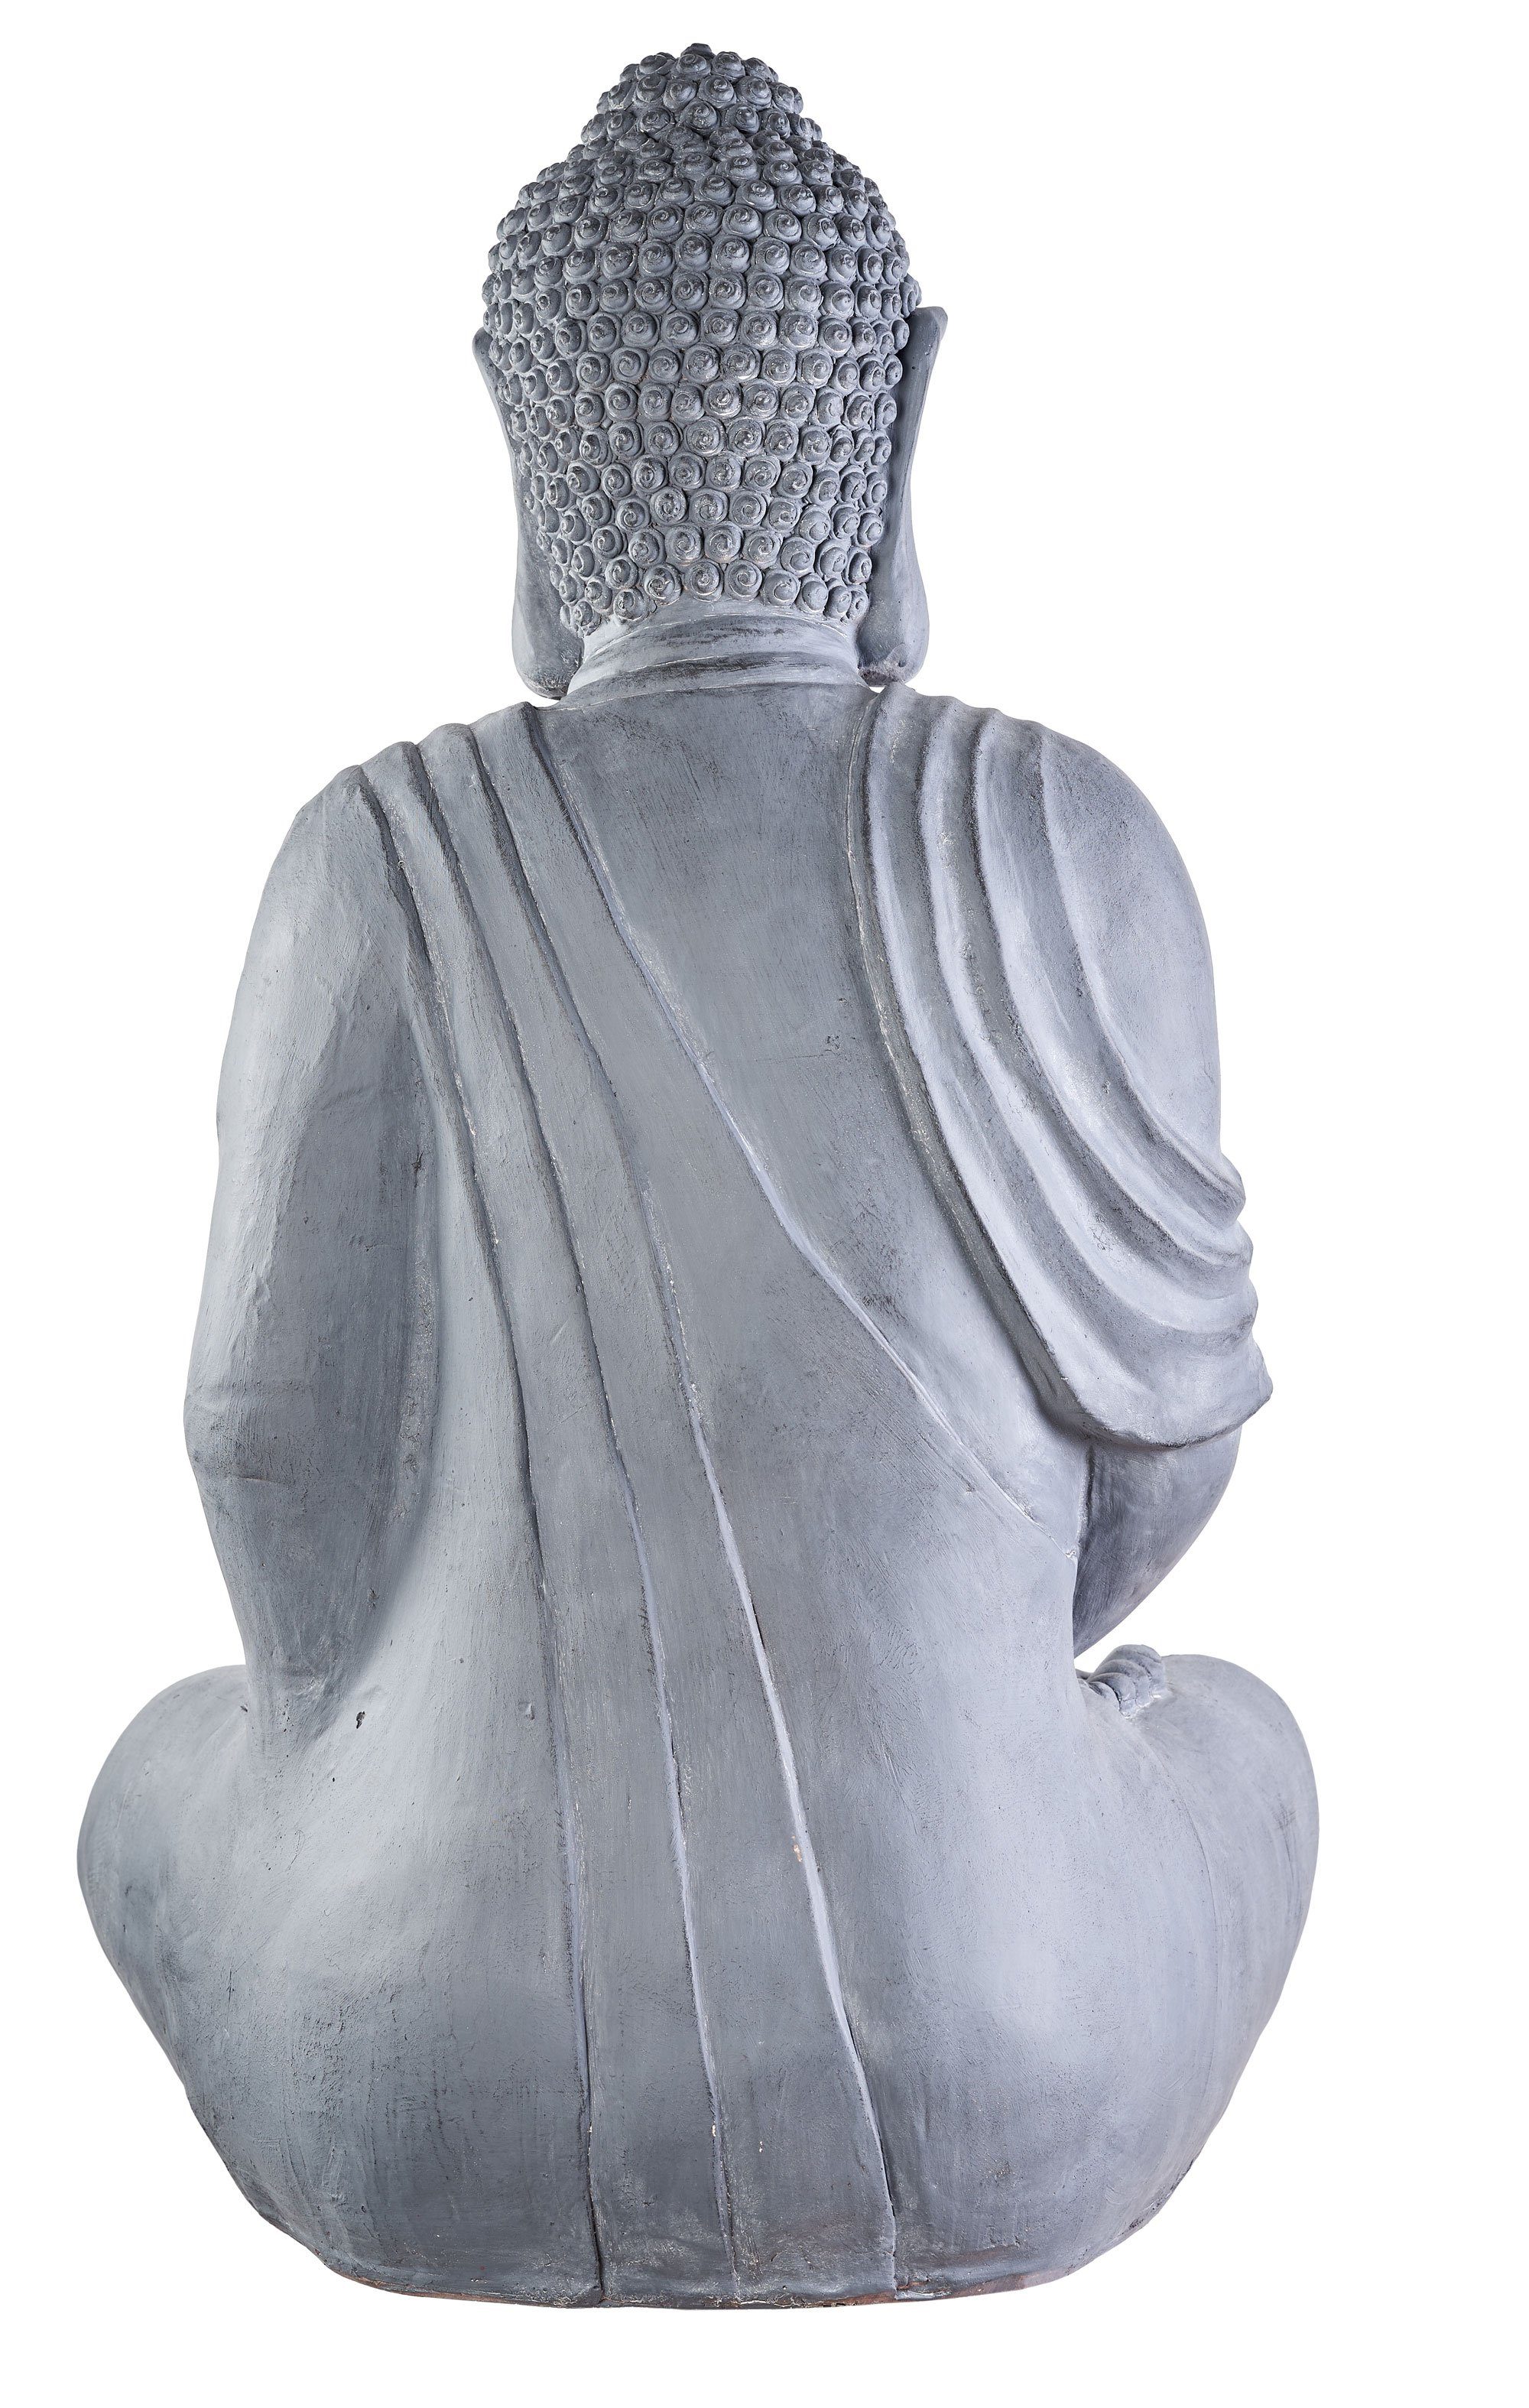 NEUSTEIN Buddhafigur Skulptur Figur Buddha XXXL Garten Deko Steinoptik 100 cm Großer